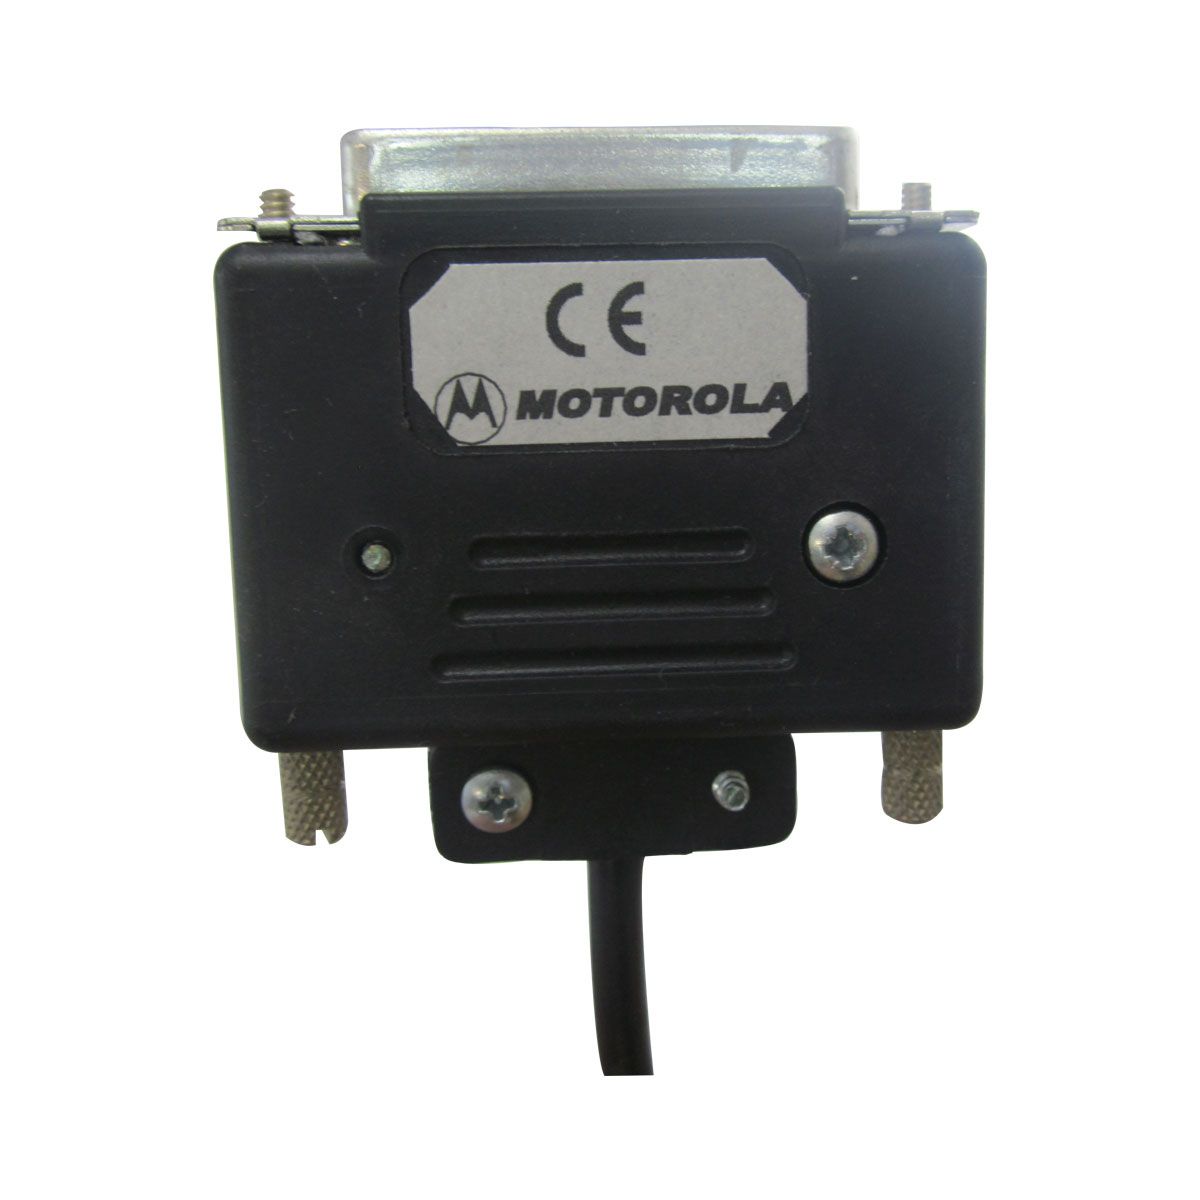 Cable de programación Motorola AARKN4081 para radio EM200 Y EM400